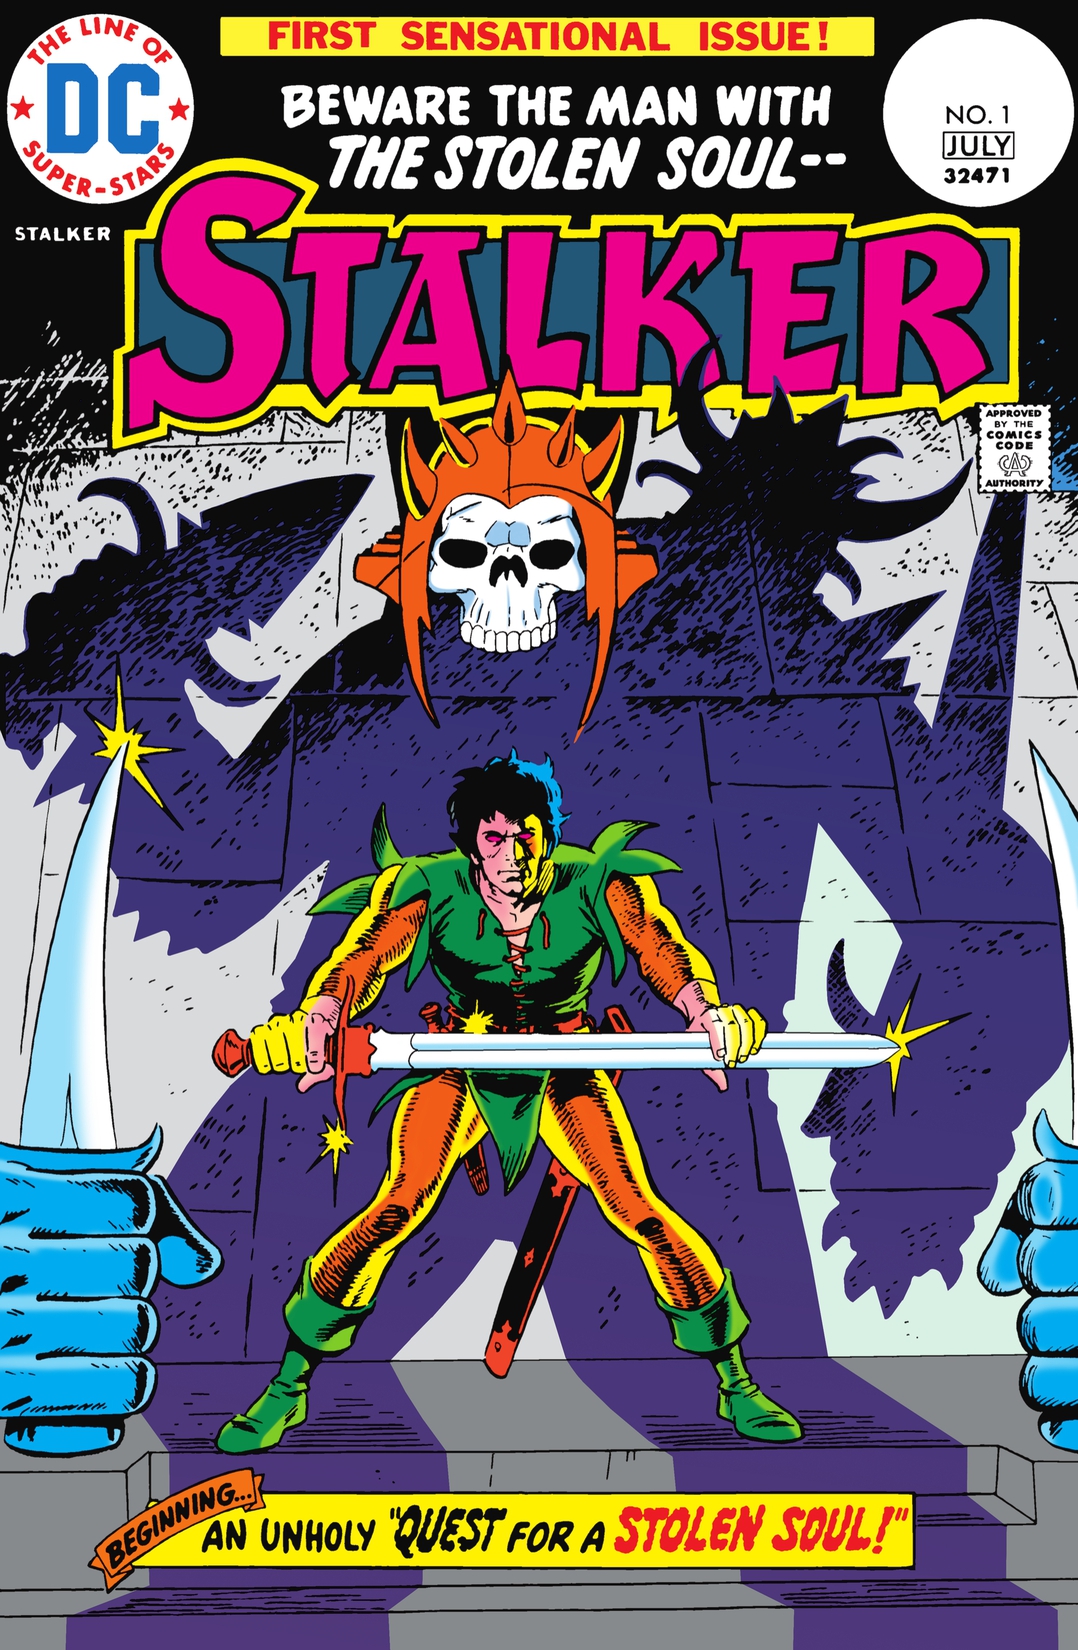 Stalker #1 preview images